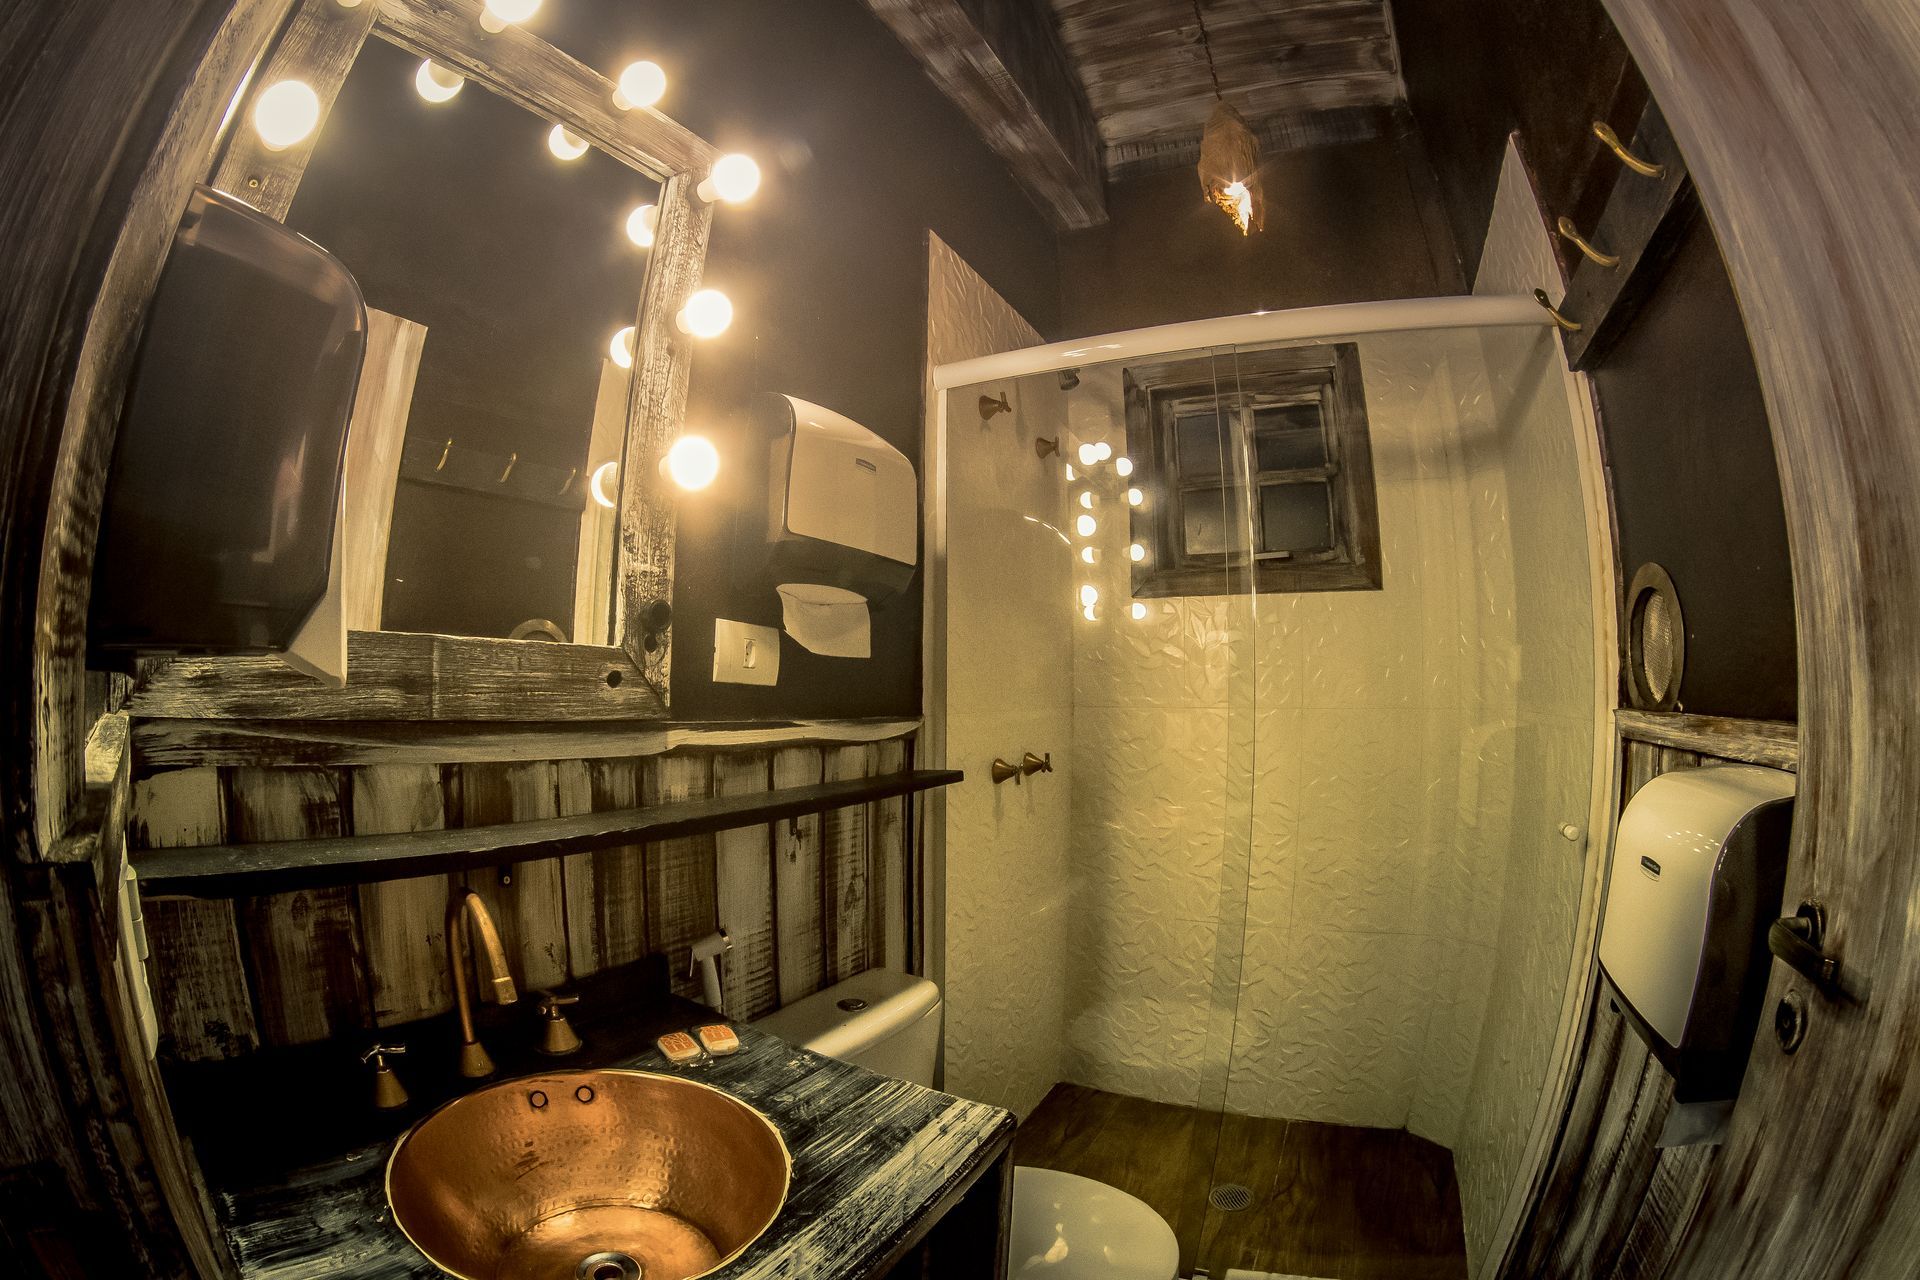 Um banheiro com pia, vaso sanitário, chuveiro e espelho.